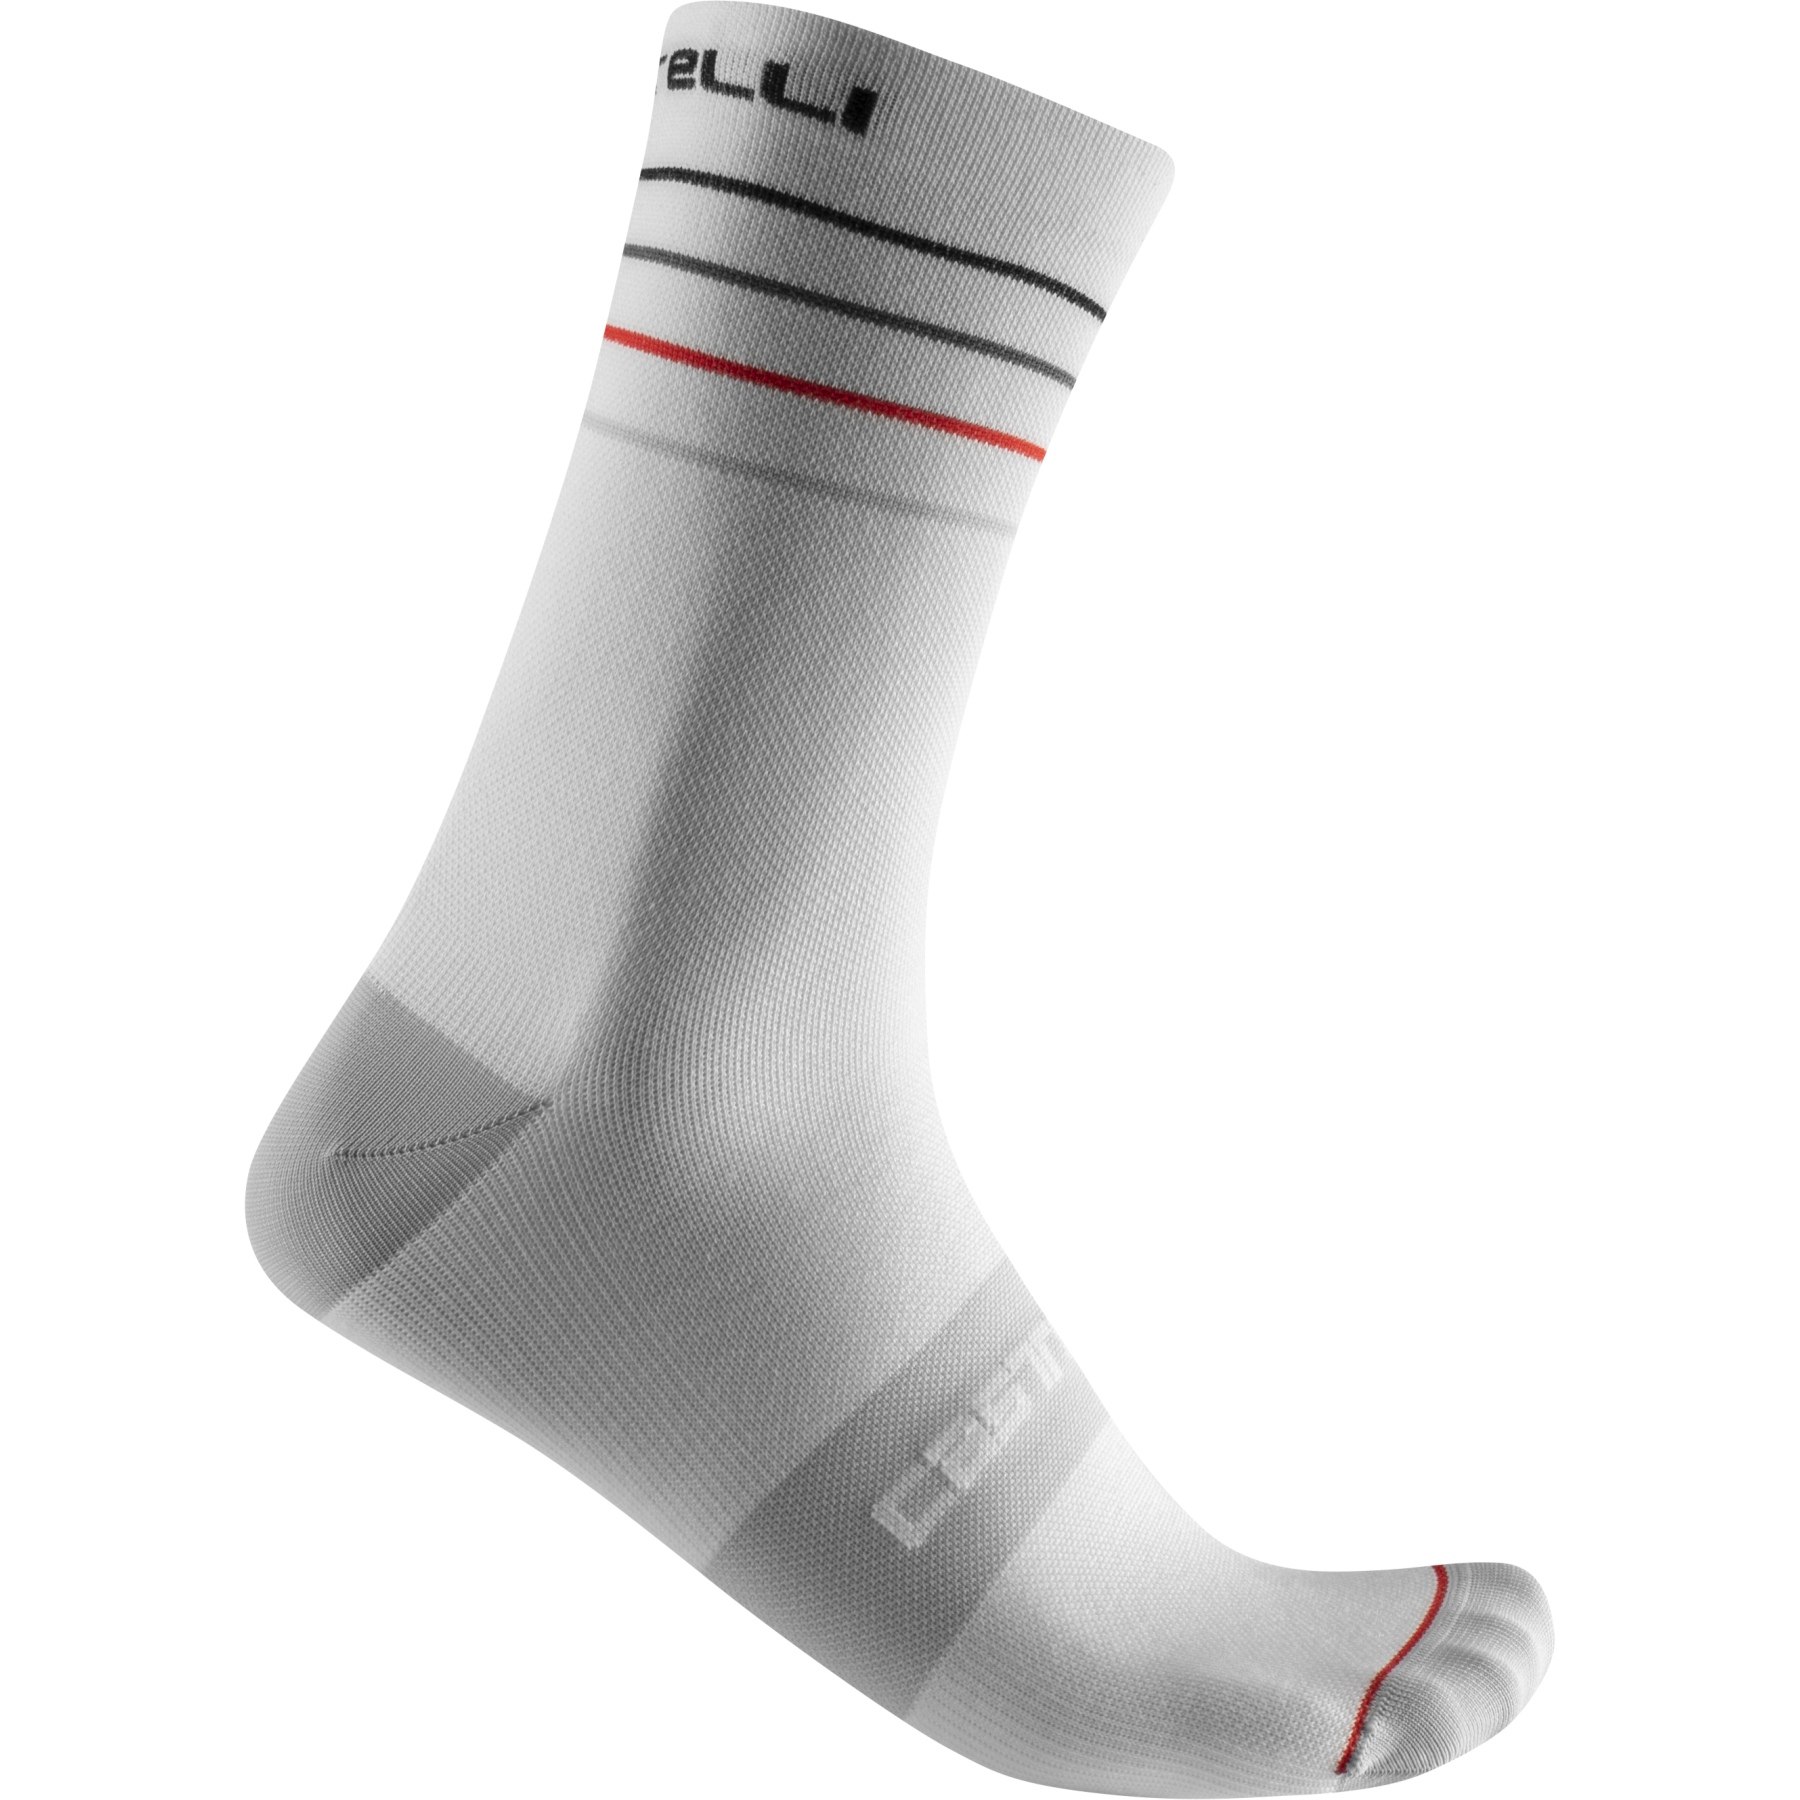 Produktbild von Castelli Endurance 15 Socken - weiß/schwarz-rot 001